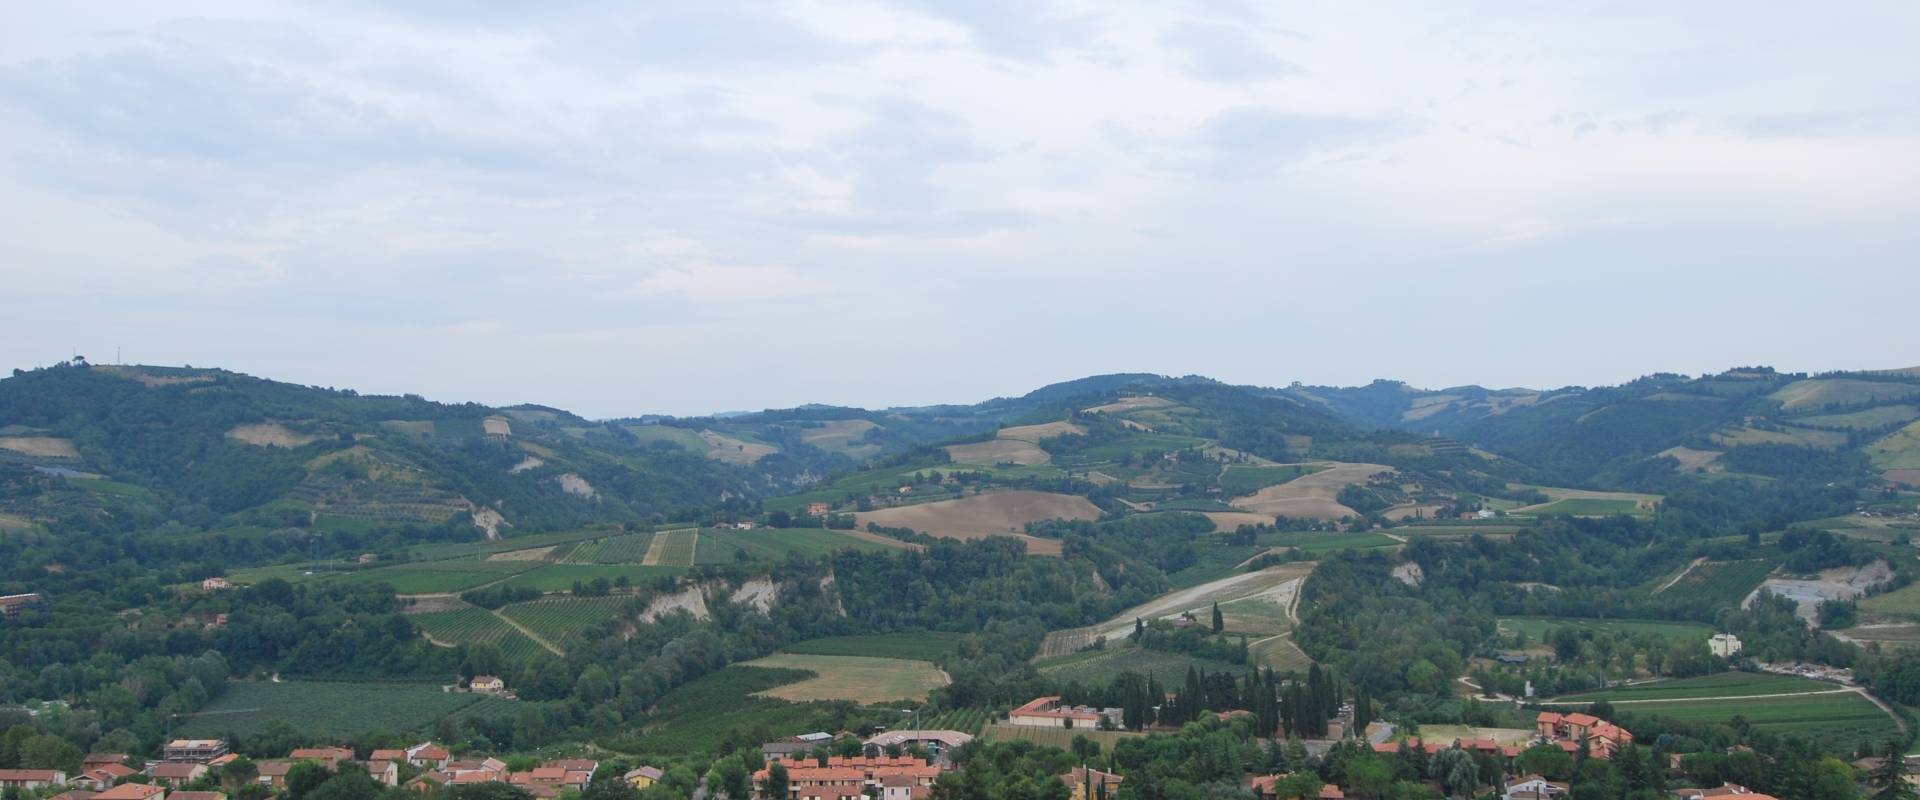 Il paesaggio visto dalla Rocca Manfrediana foto di Chiari86